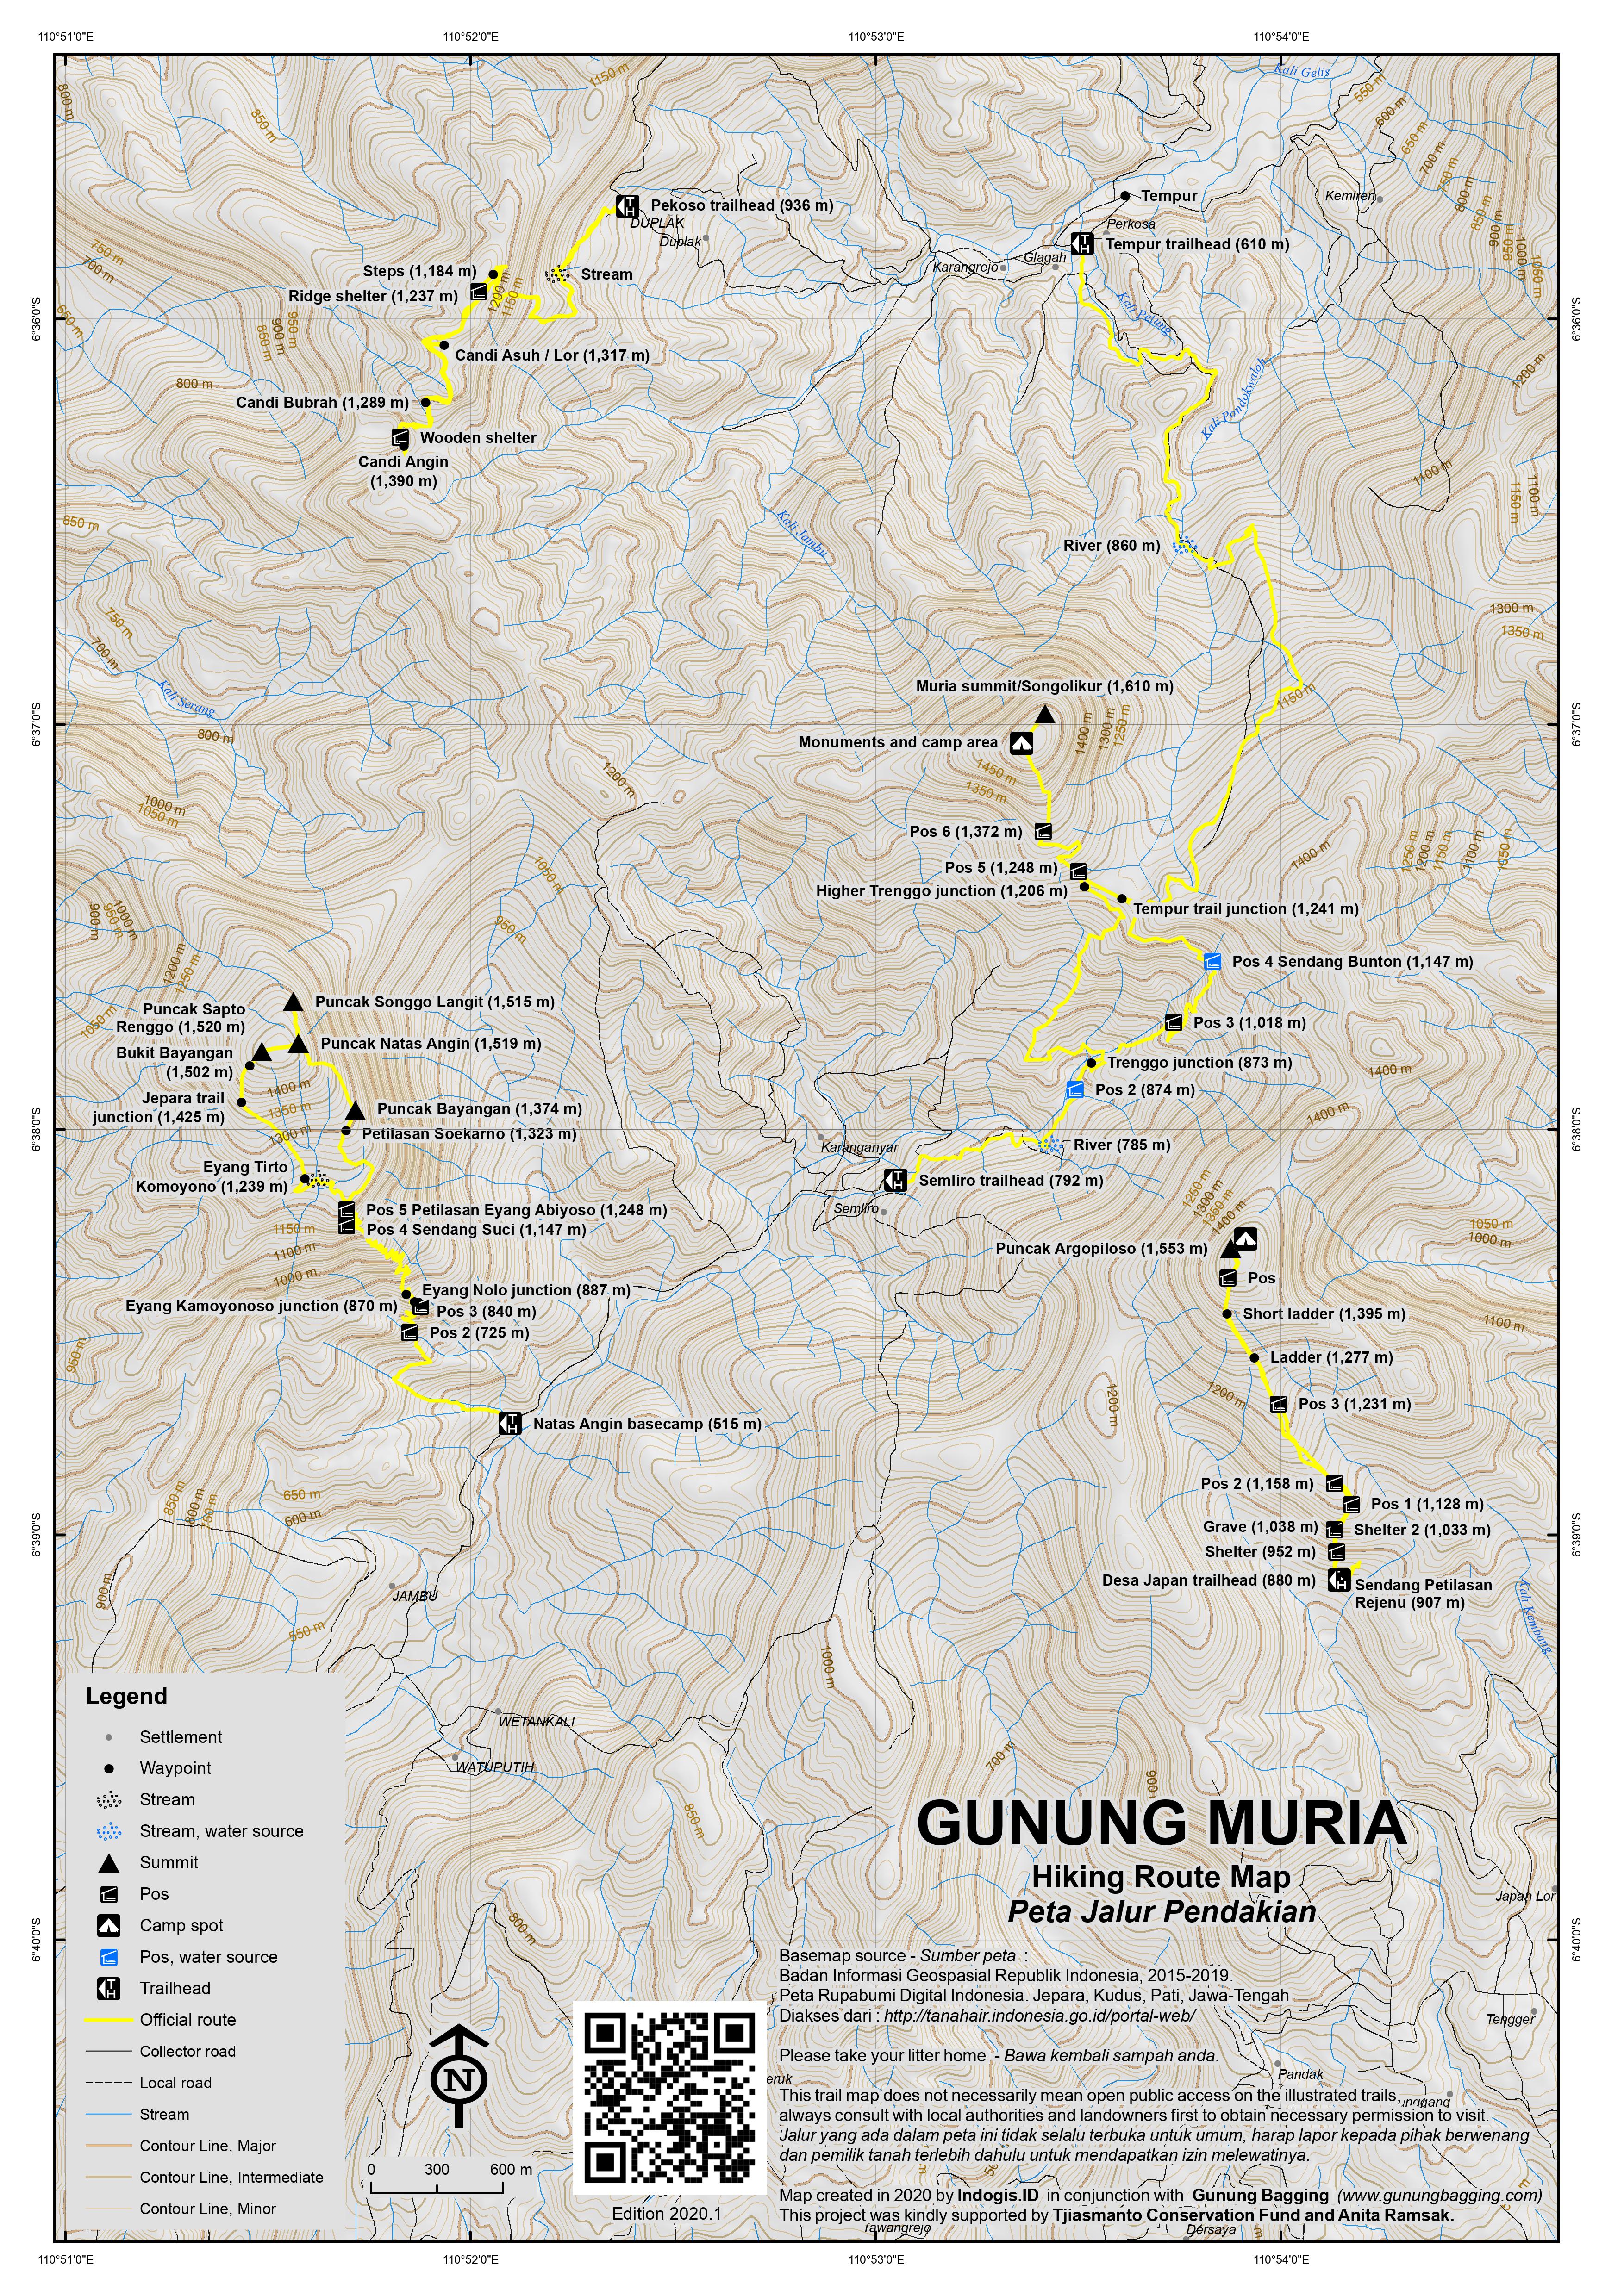 Peta Jalur Pendakian Gunung Muria